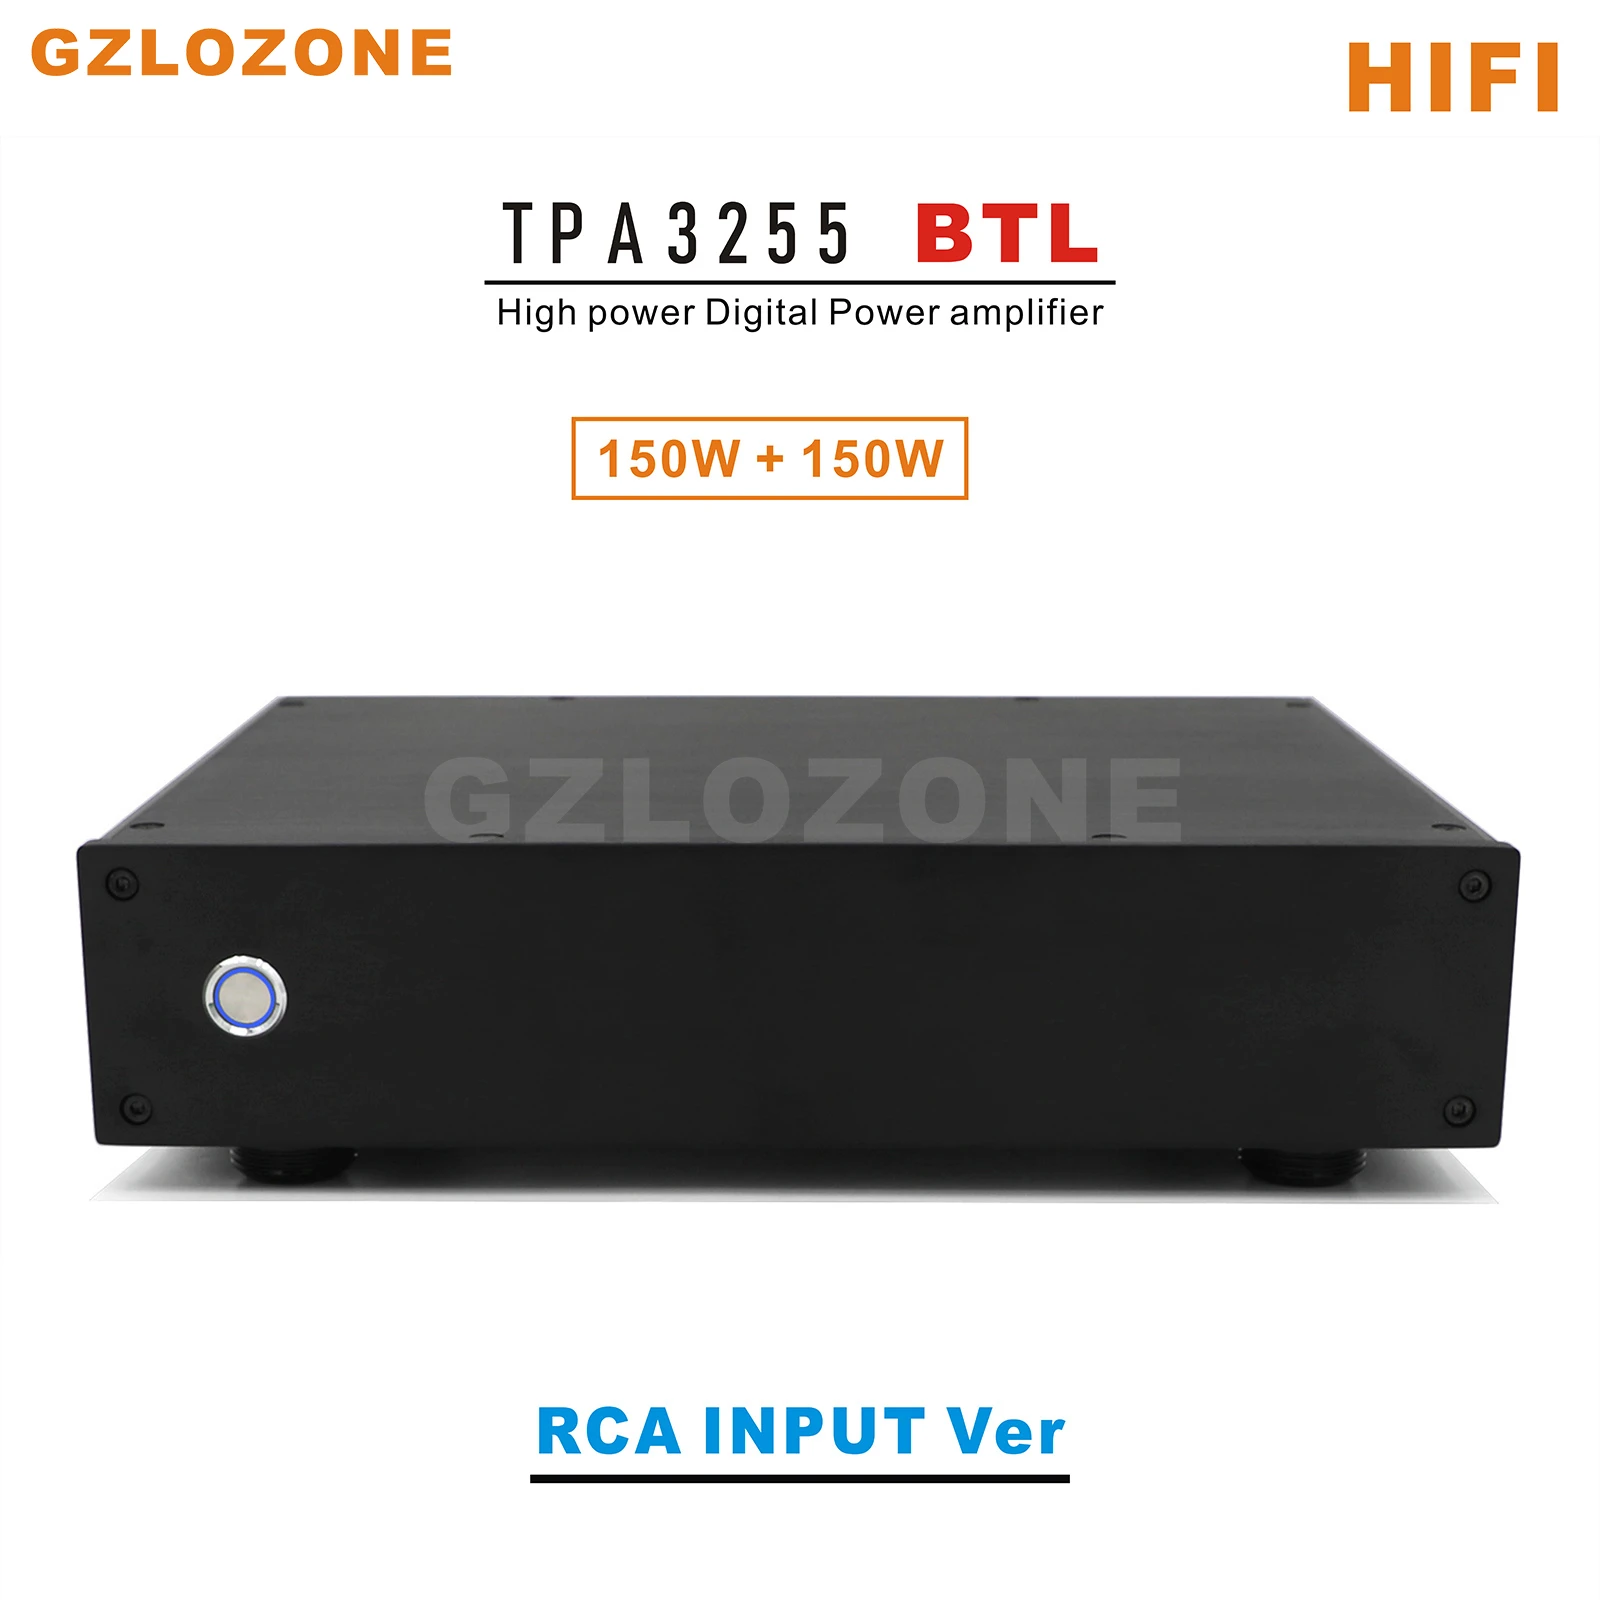 

HIFI TPA3255 BTL High power Digital Power amplifier RCA or XLR Ver Input Optional 150W+150W